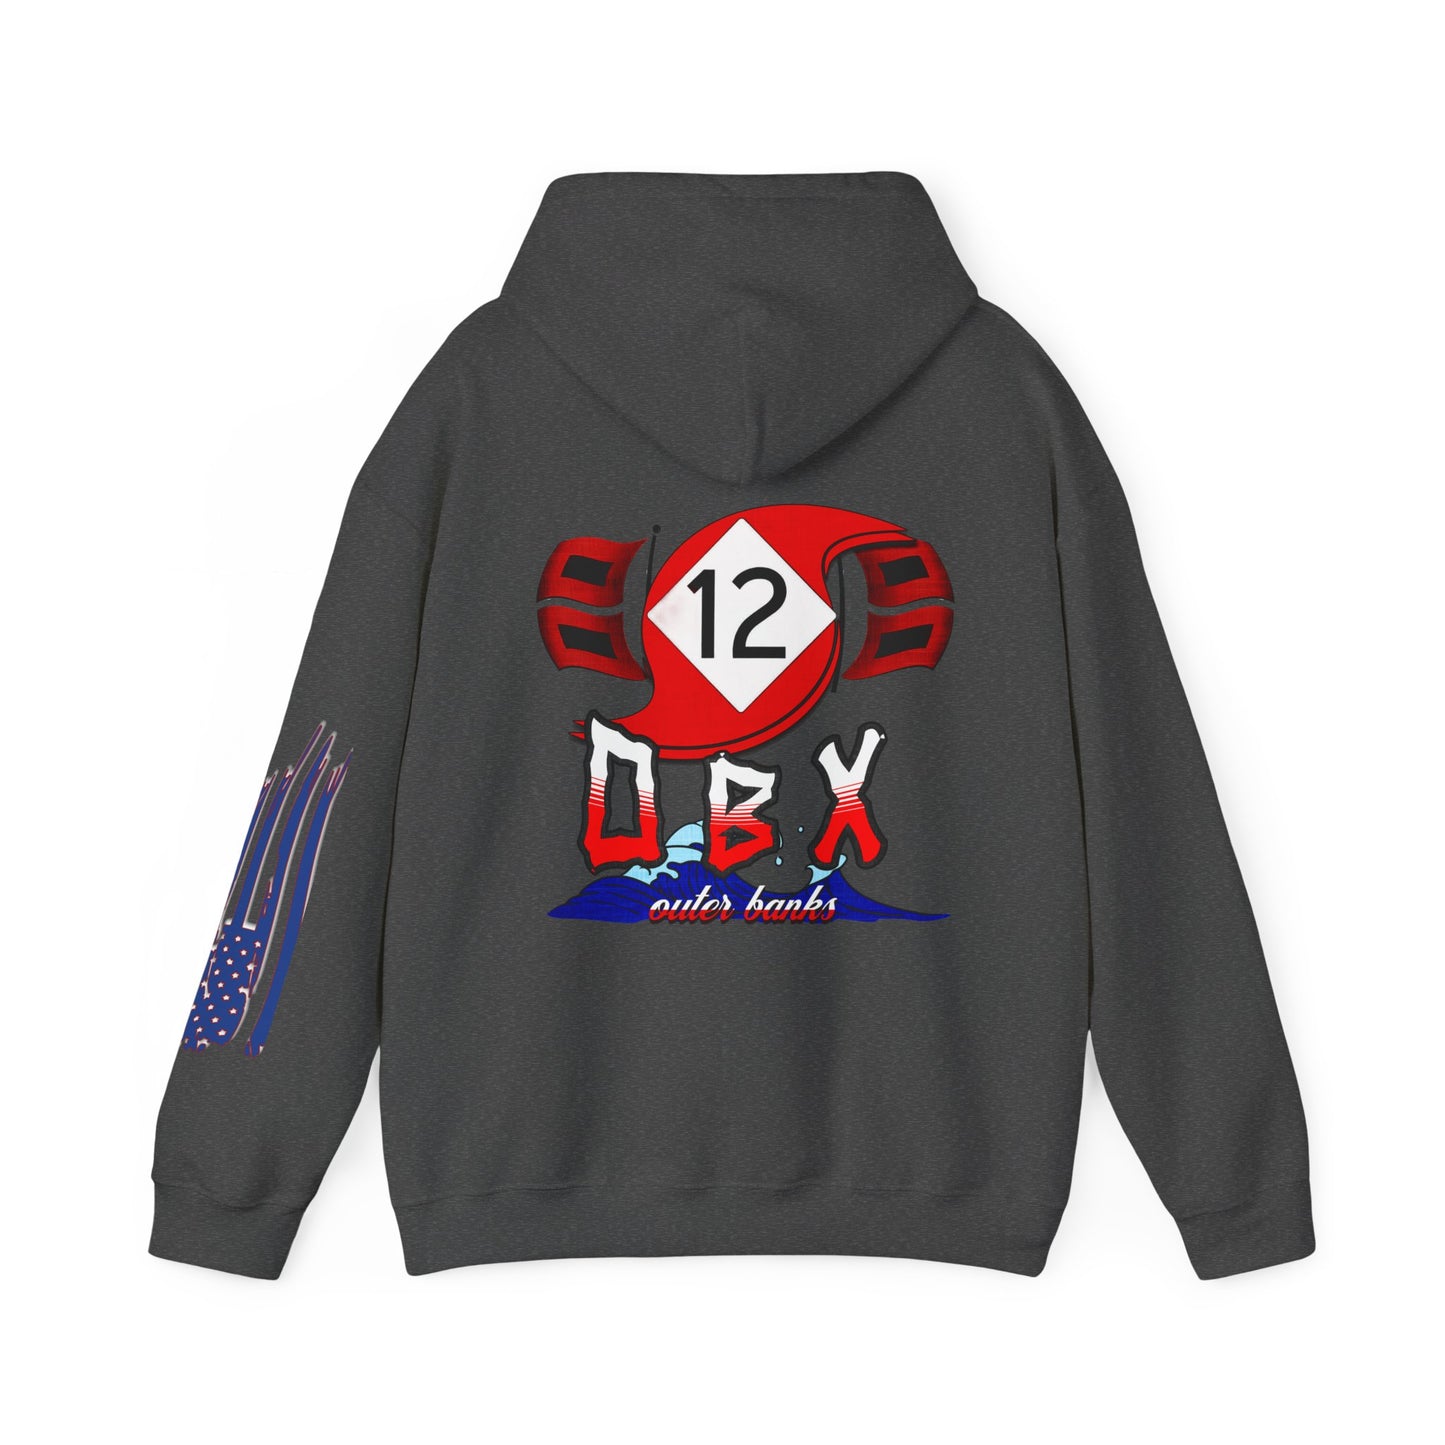 HIGHWAY 12, OBX, N.C., Unisex Heavy Blend™ Hooded Sweatshirt